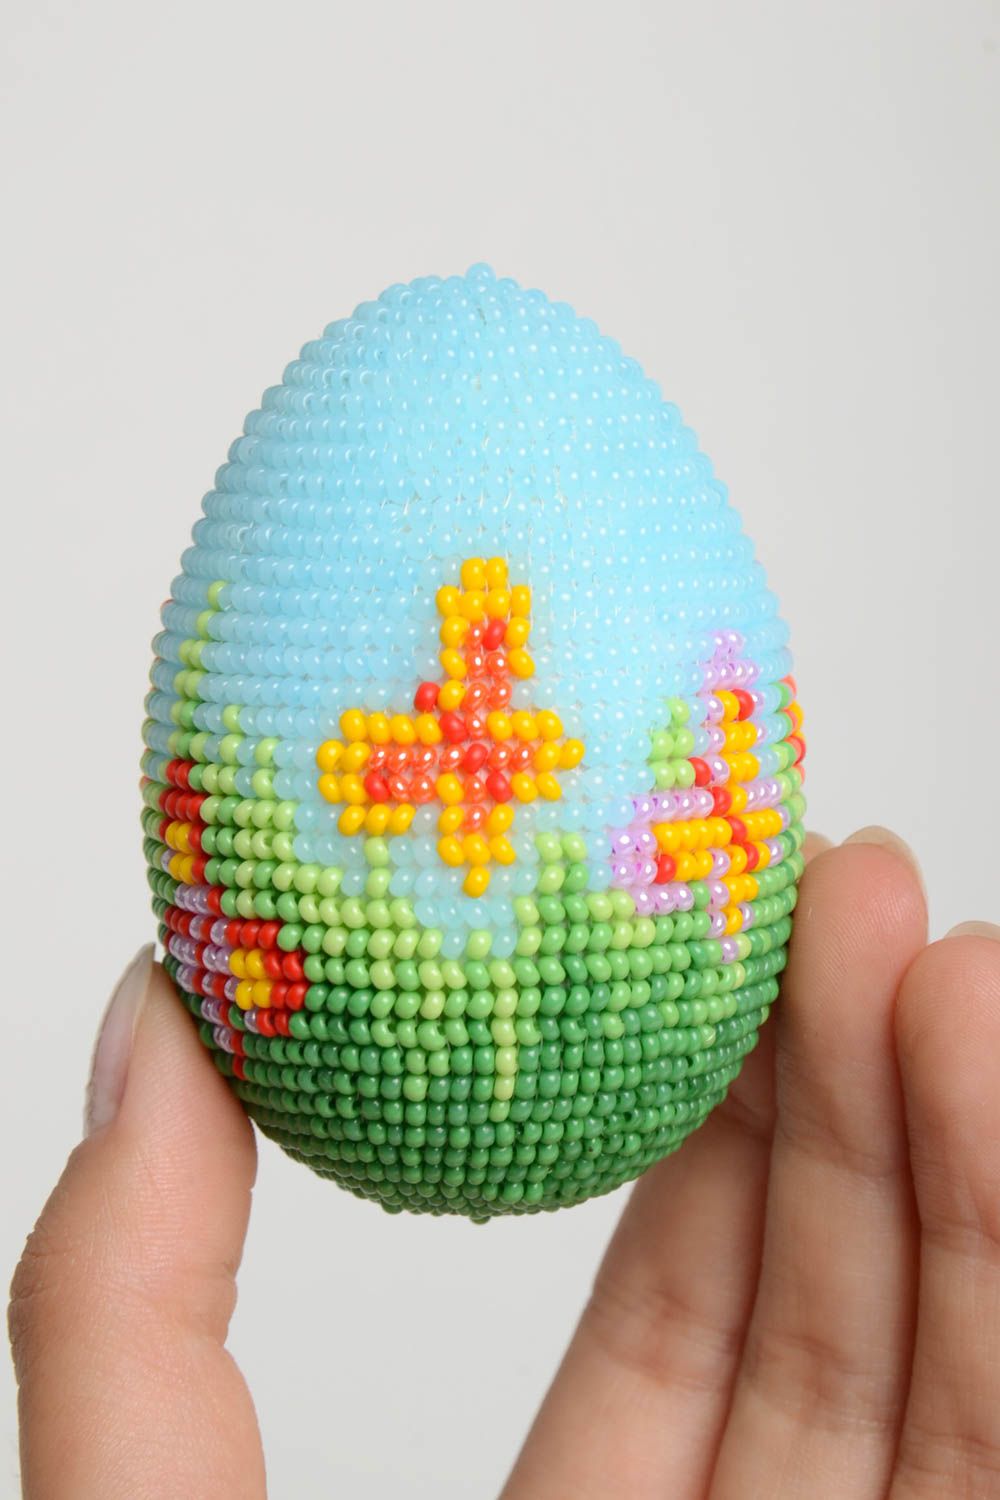 Изделие хэнд мейд пасхальное яйцо красивое необычное пасхальный декор яркий фото 5